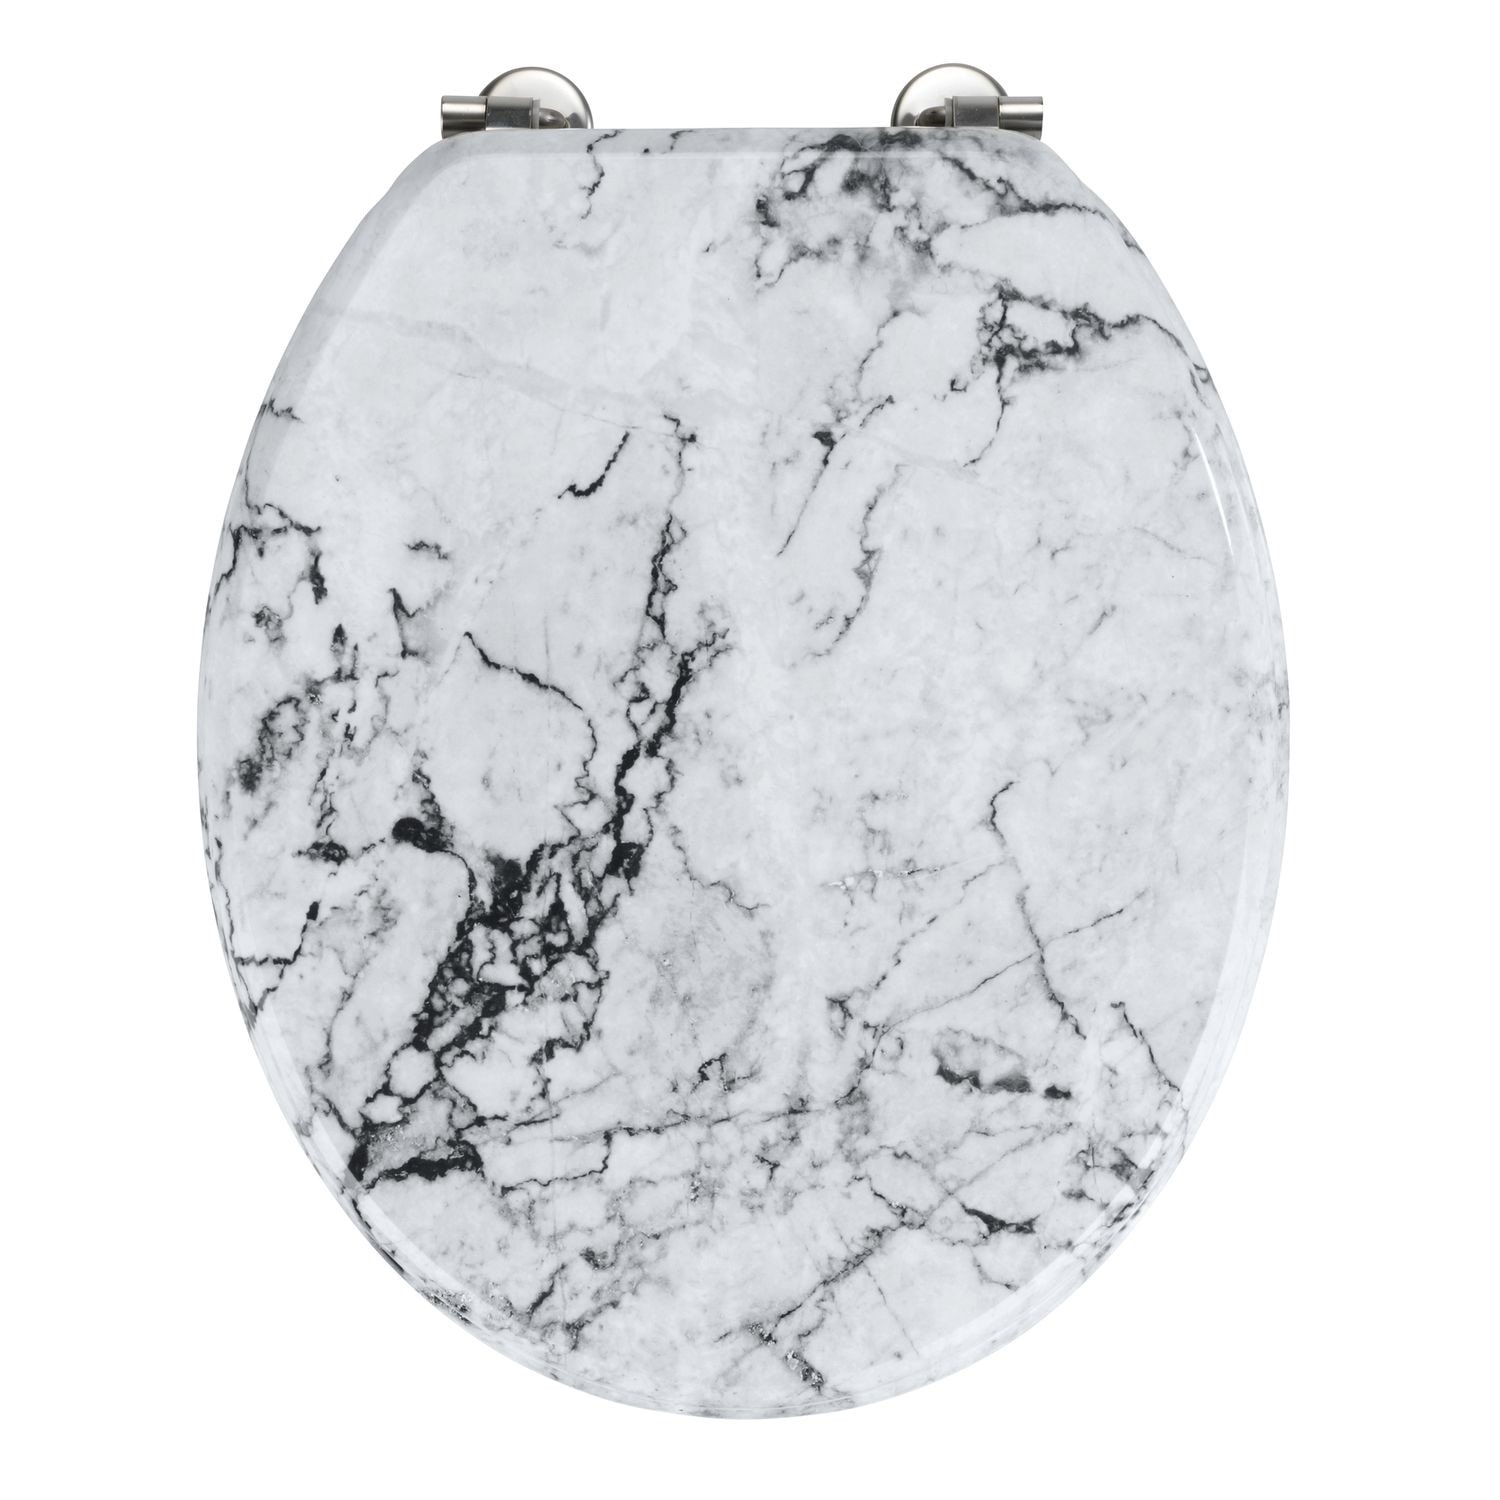 Abattant wc en mdf design marbre onyx - blanc WENKO 399278 Pas Cher 